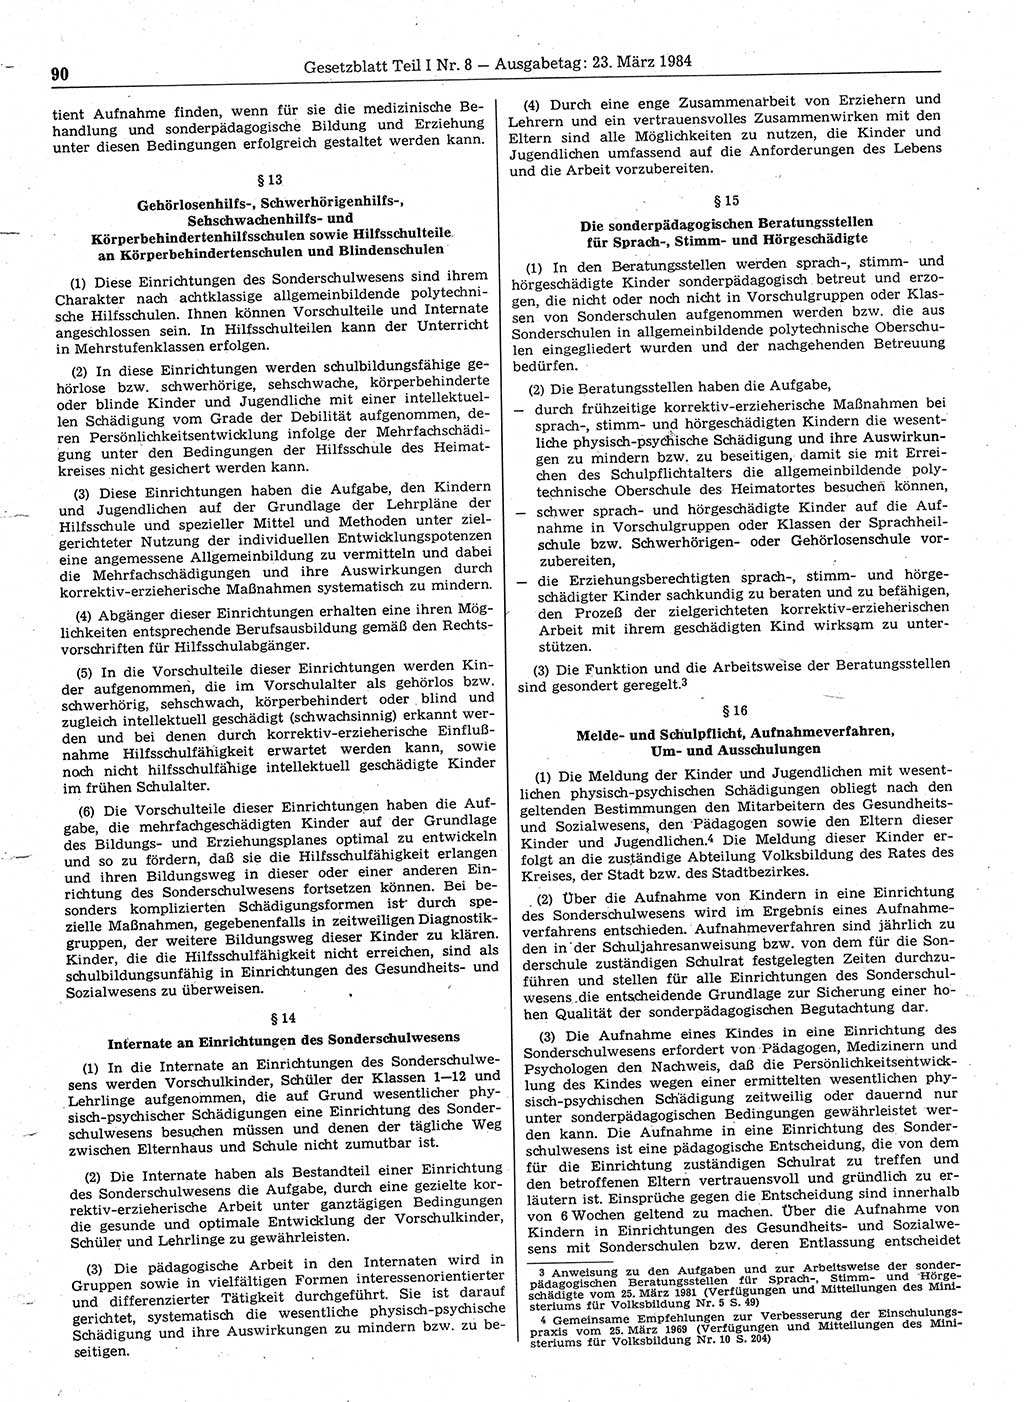 Gesetzblatt (GBl.) der Deutschen Demokratischen Republik (DDR) Teil Ⅰ 1984, Seite 90 (GBl. DDR Ⅰ 1984, S. 90)